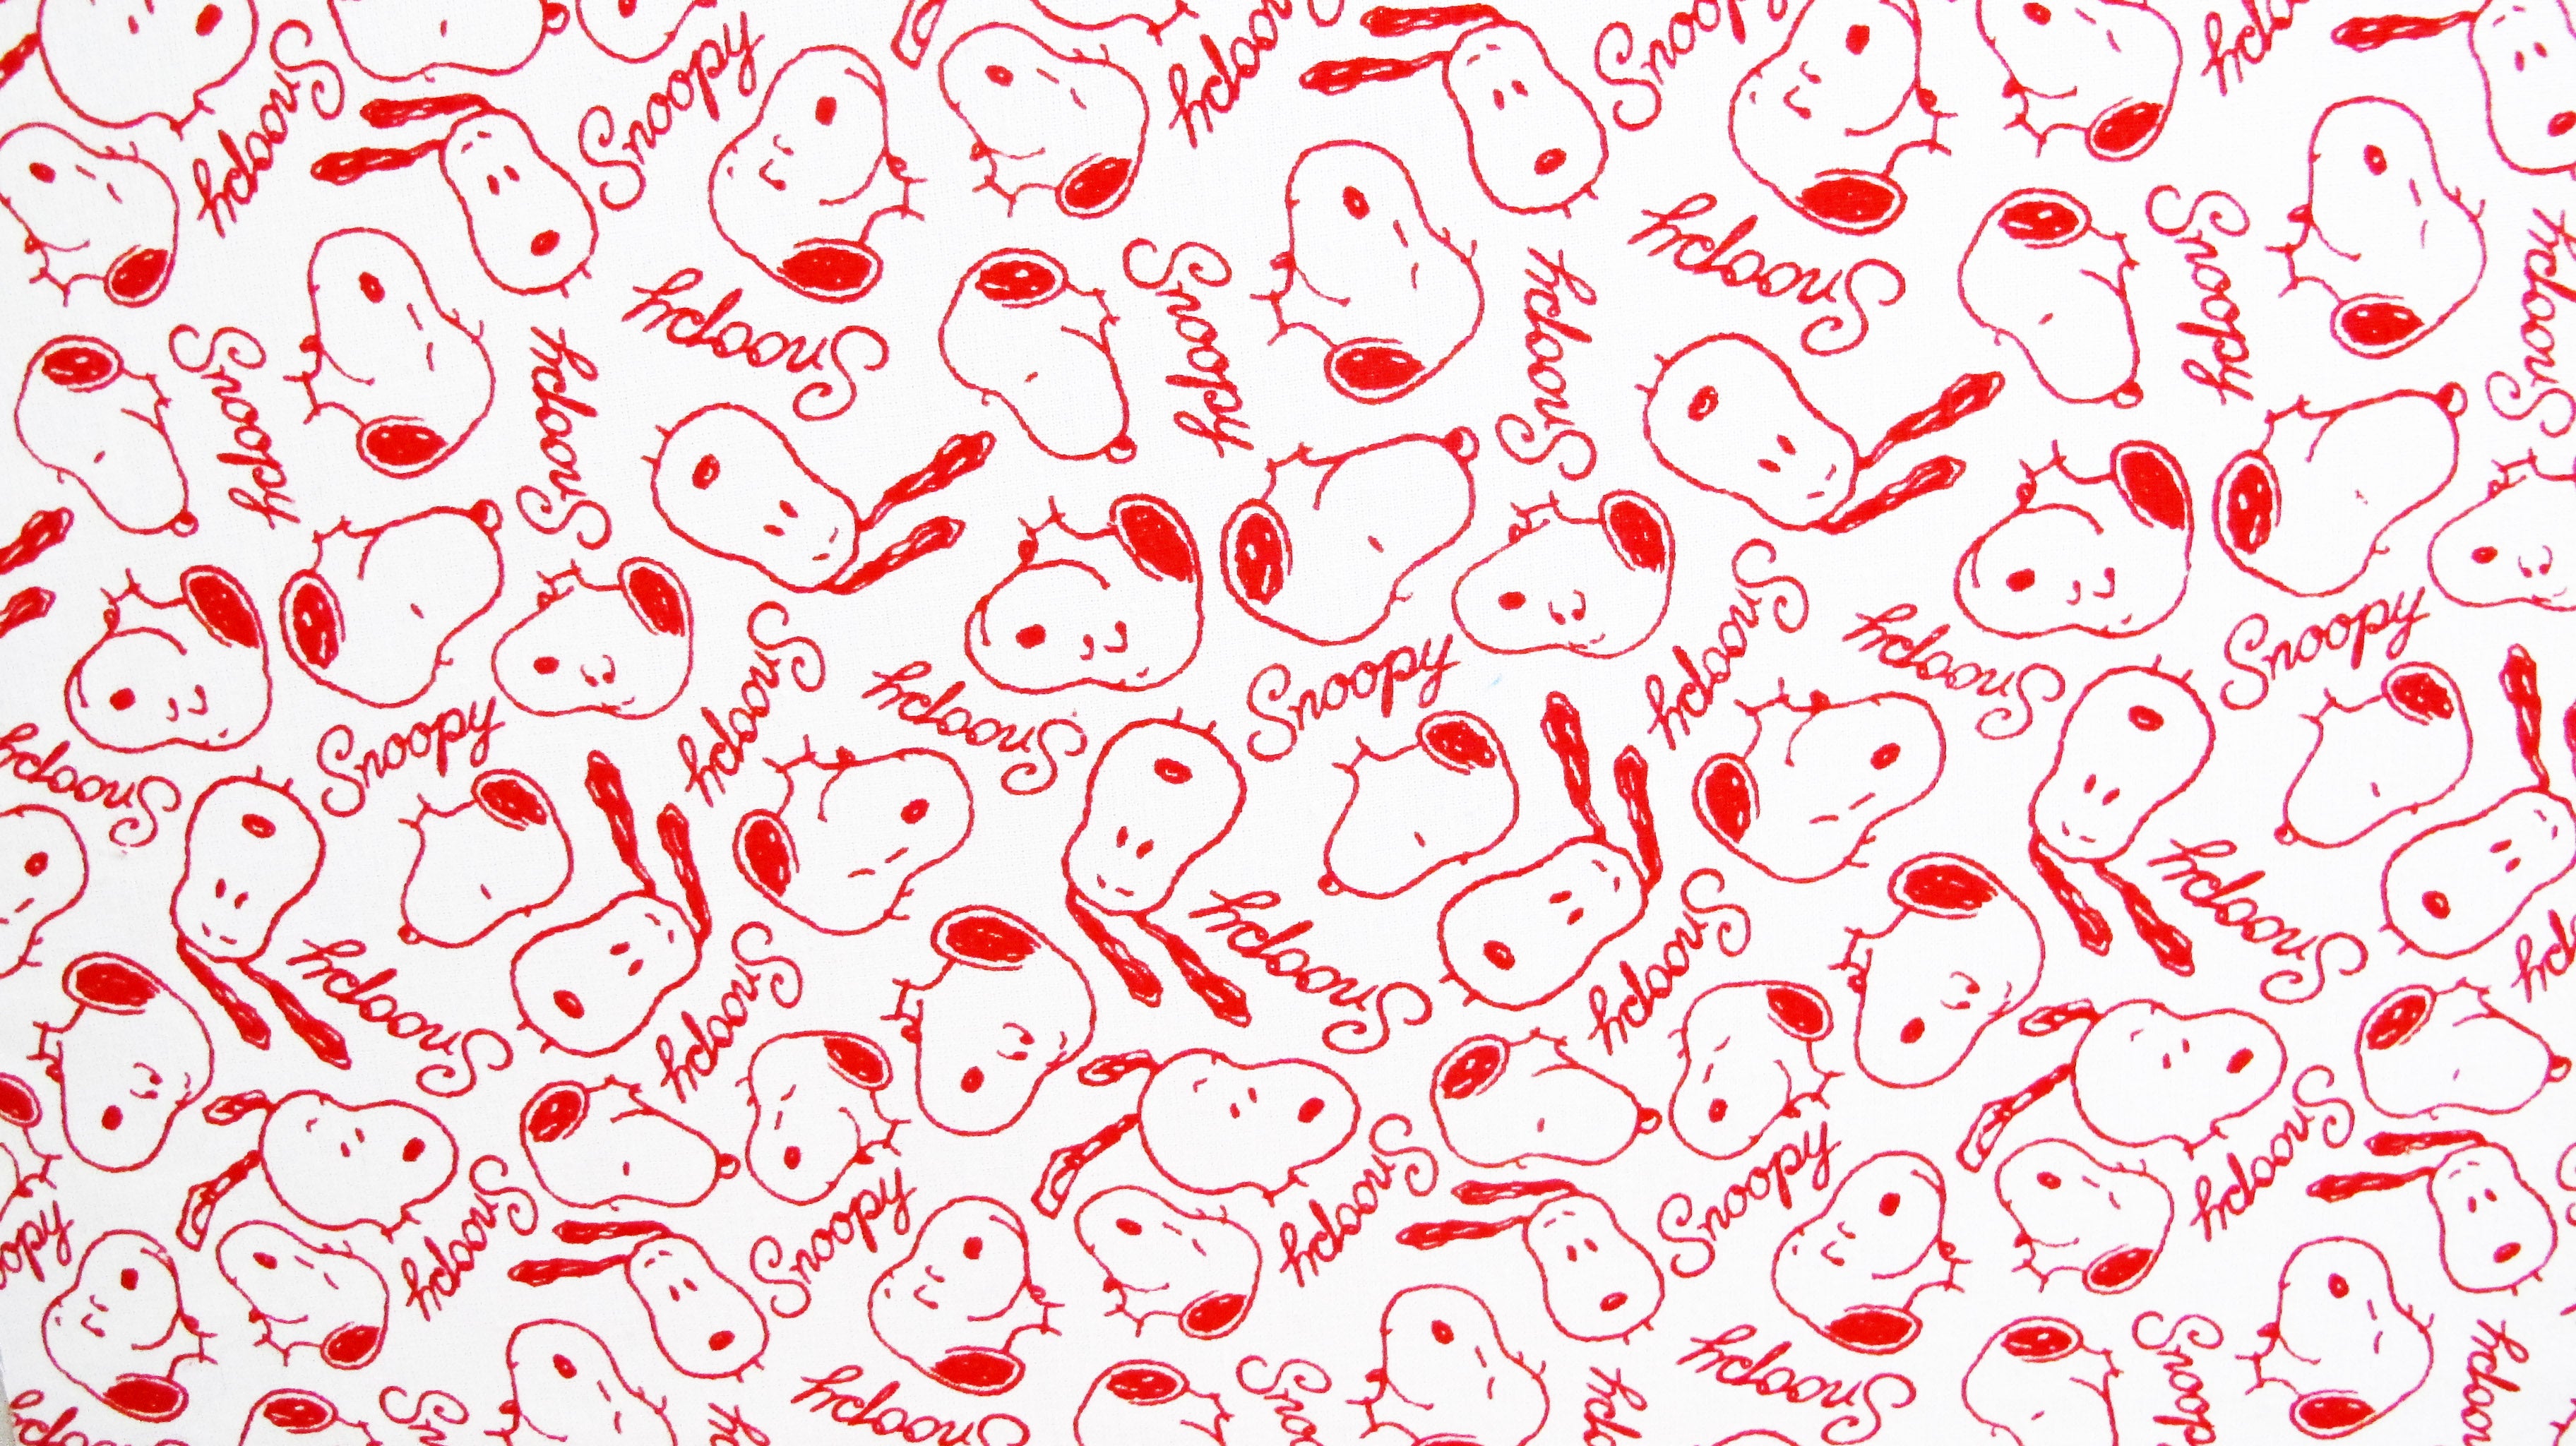 Serie van Onmiddellijk Ijsbeer Peanuts Fabric - Snoopy All Over (25" x 60") | snoopn4pnuts.com